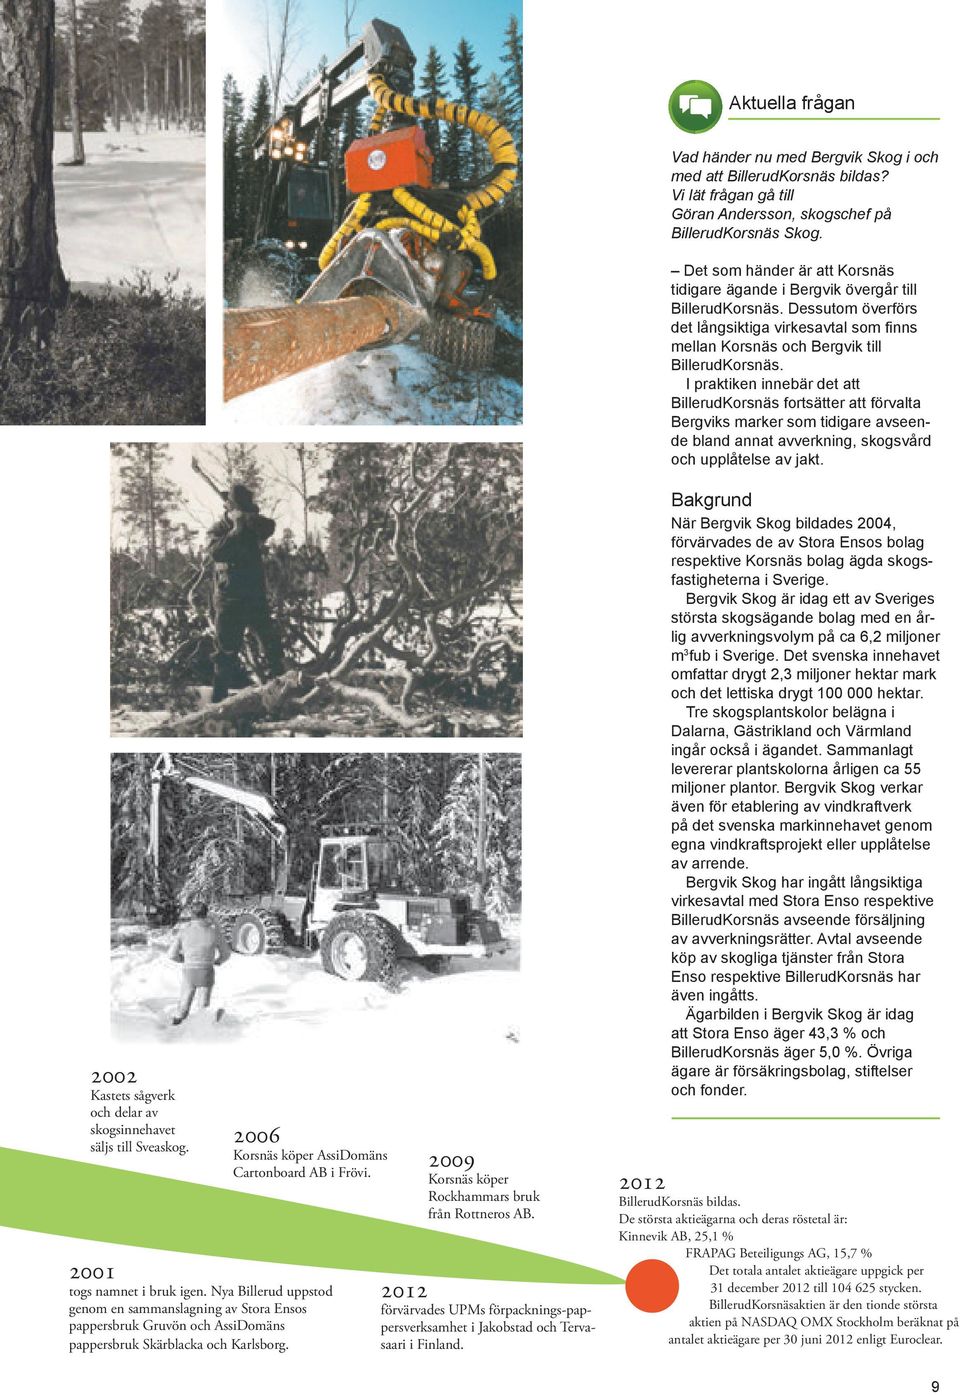 I praktiken innebär det att BillerudKorsnäs fortsätter att förvalta Bergviks marker som tidigare avseende bland annat avverkning, skogsvård och upplåtelse av jakt.